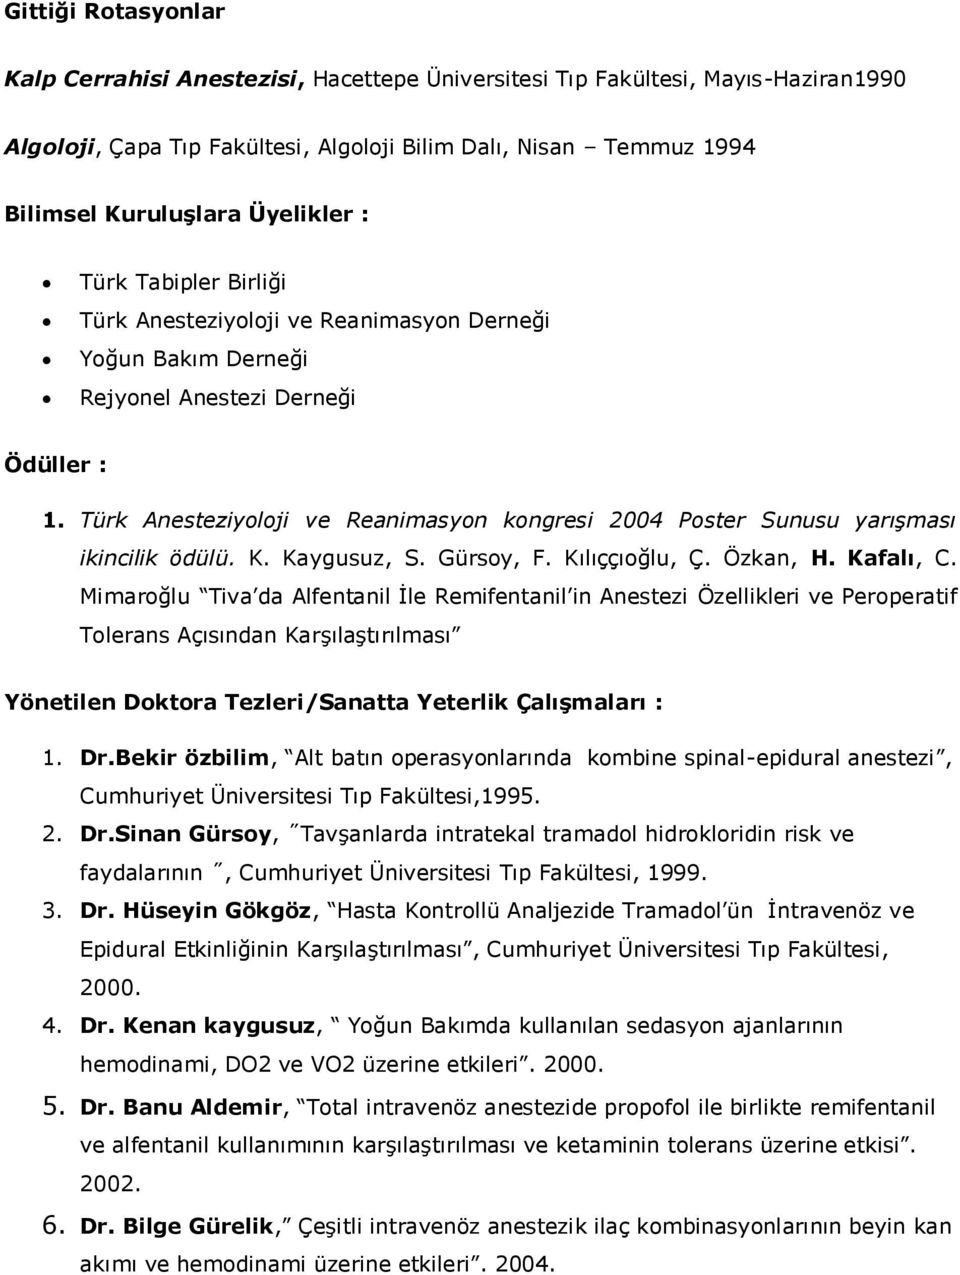 Türk Anesteziyoloji ve Reanimasyon kongresi 2004 Poster Sunusu yarışması ikincilik ödülü. K. Kaygusuz, S. Gürsoy, F. Kılıççıoğlu, Ç. Özkan, H. Kafalı, C.